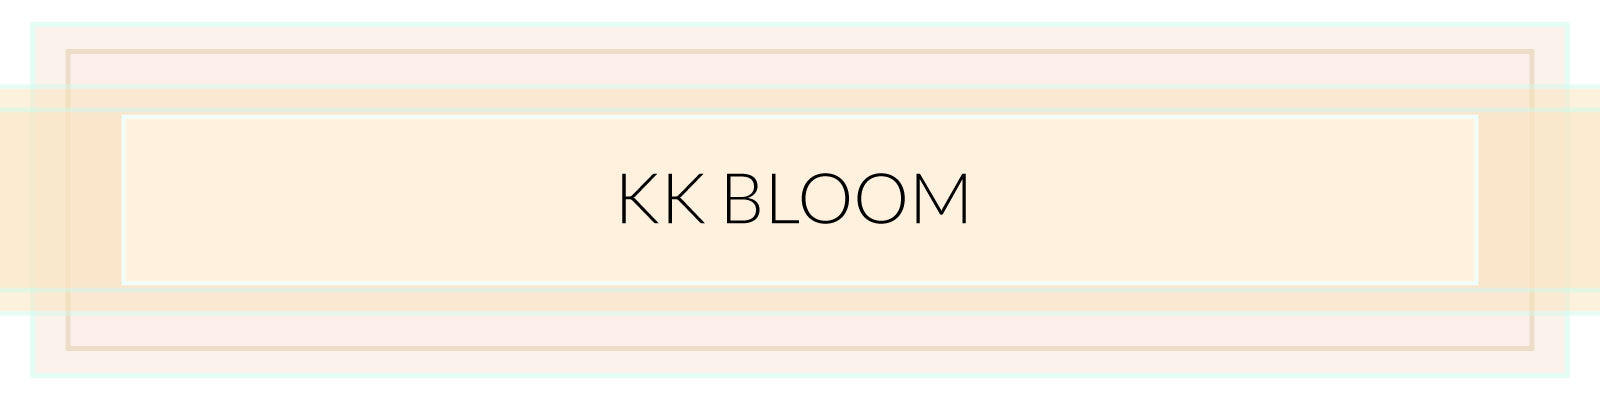 KK Bloom Boutique